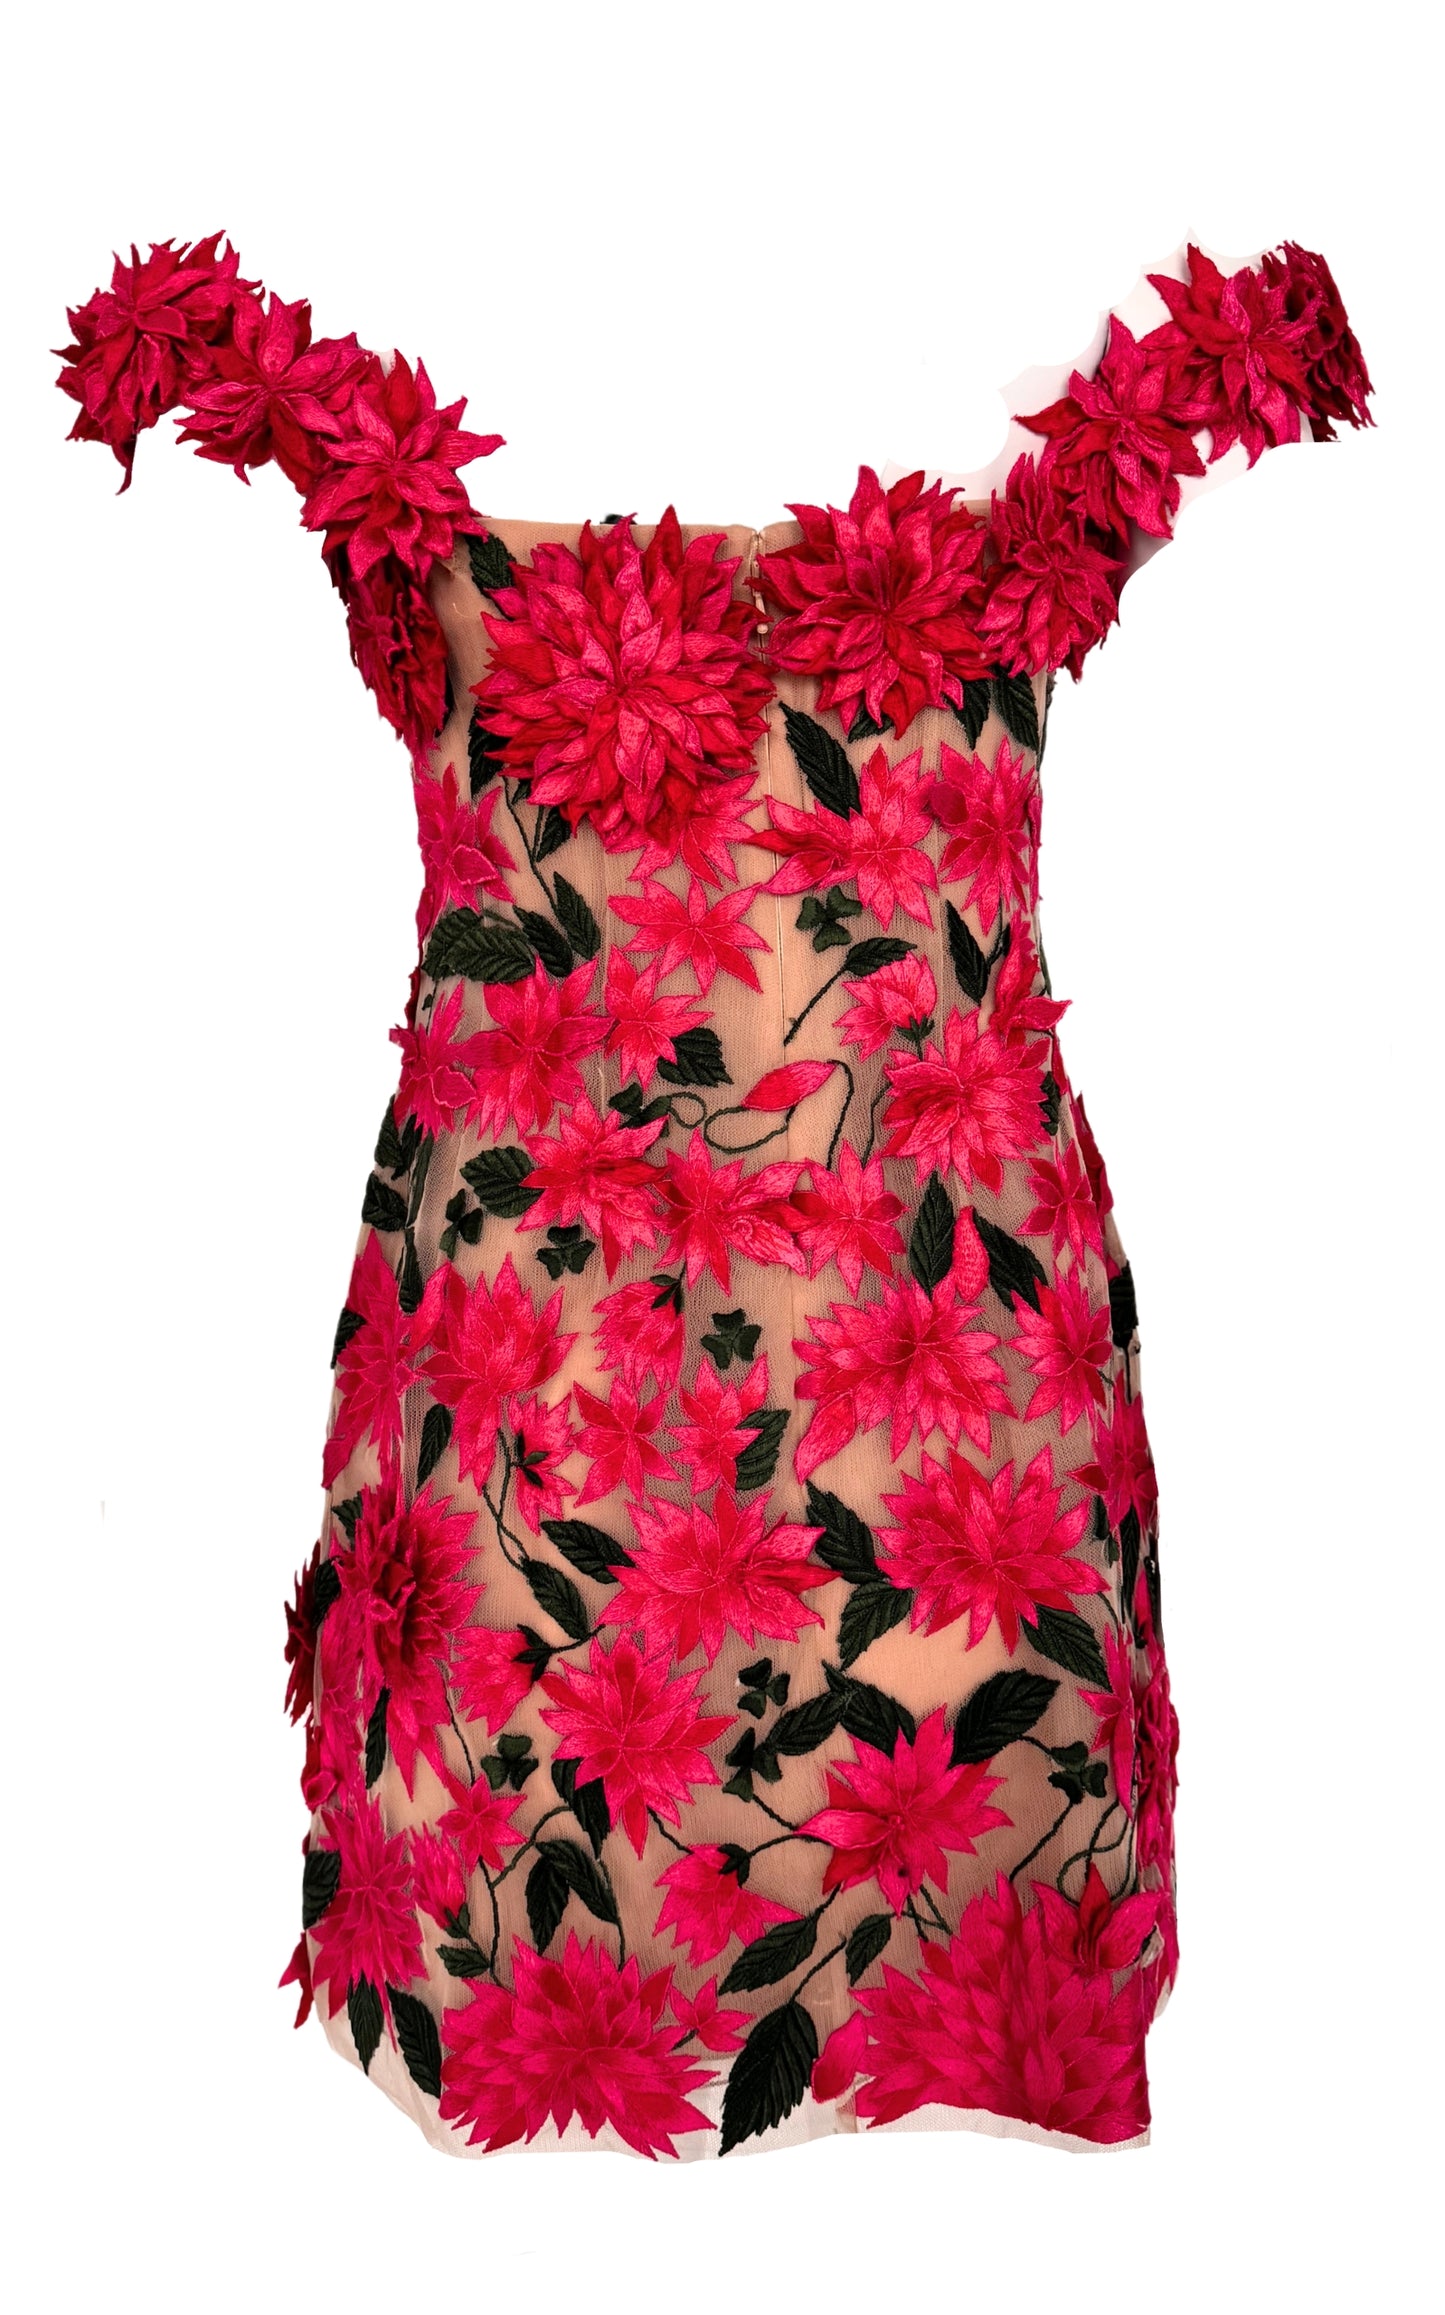 שמלת מיני דליה באפליקציה פרחונית